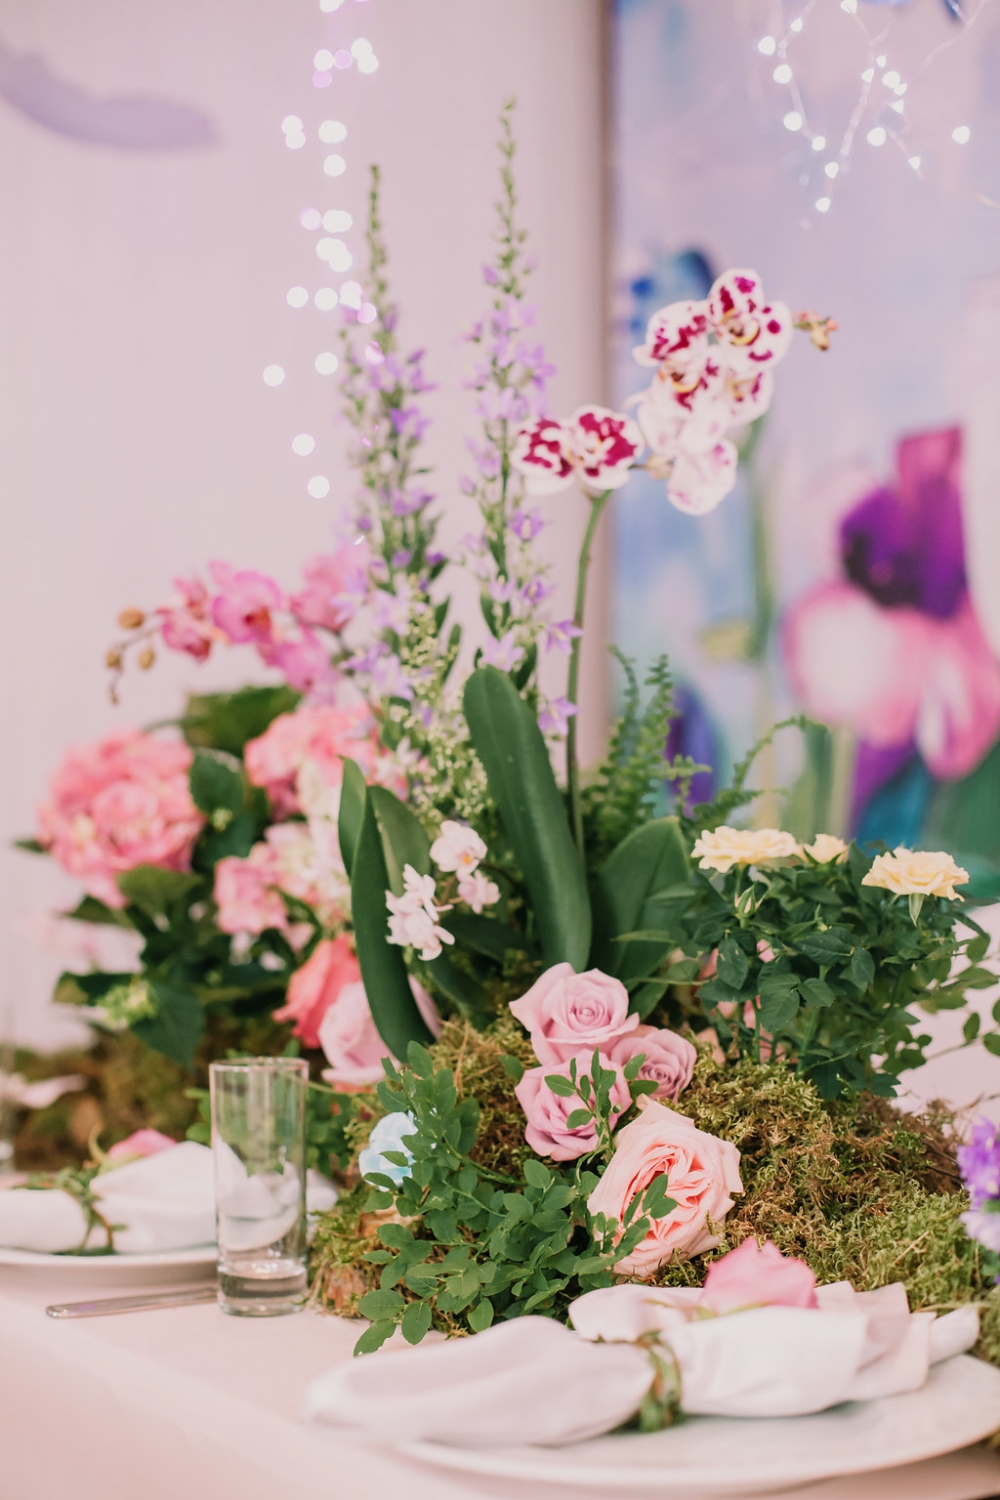 необязательно использовать на свадьбе вазы под цветы!